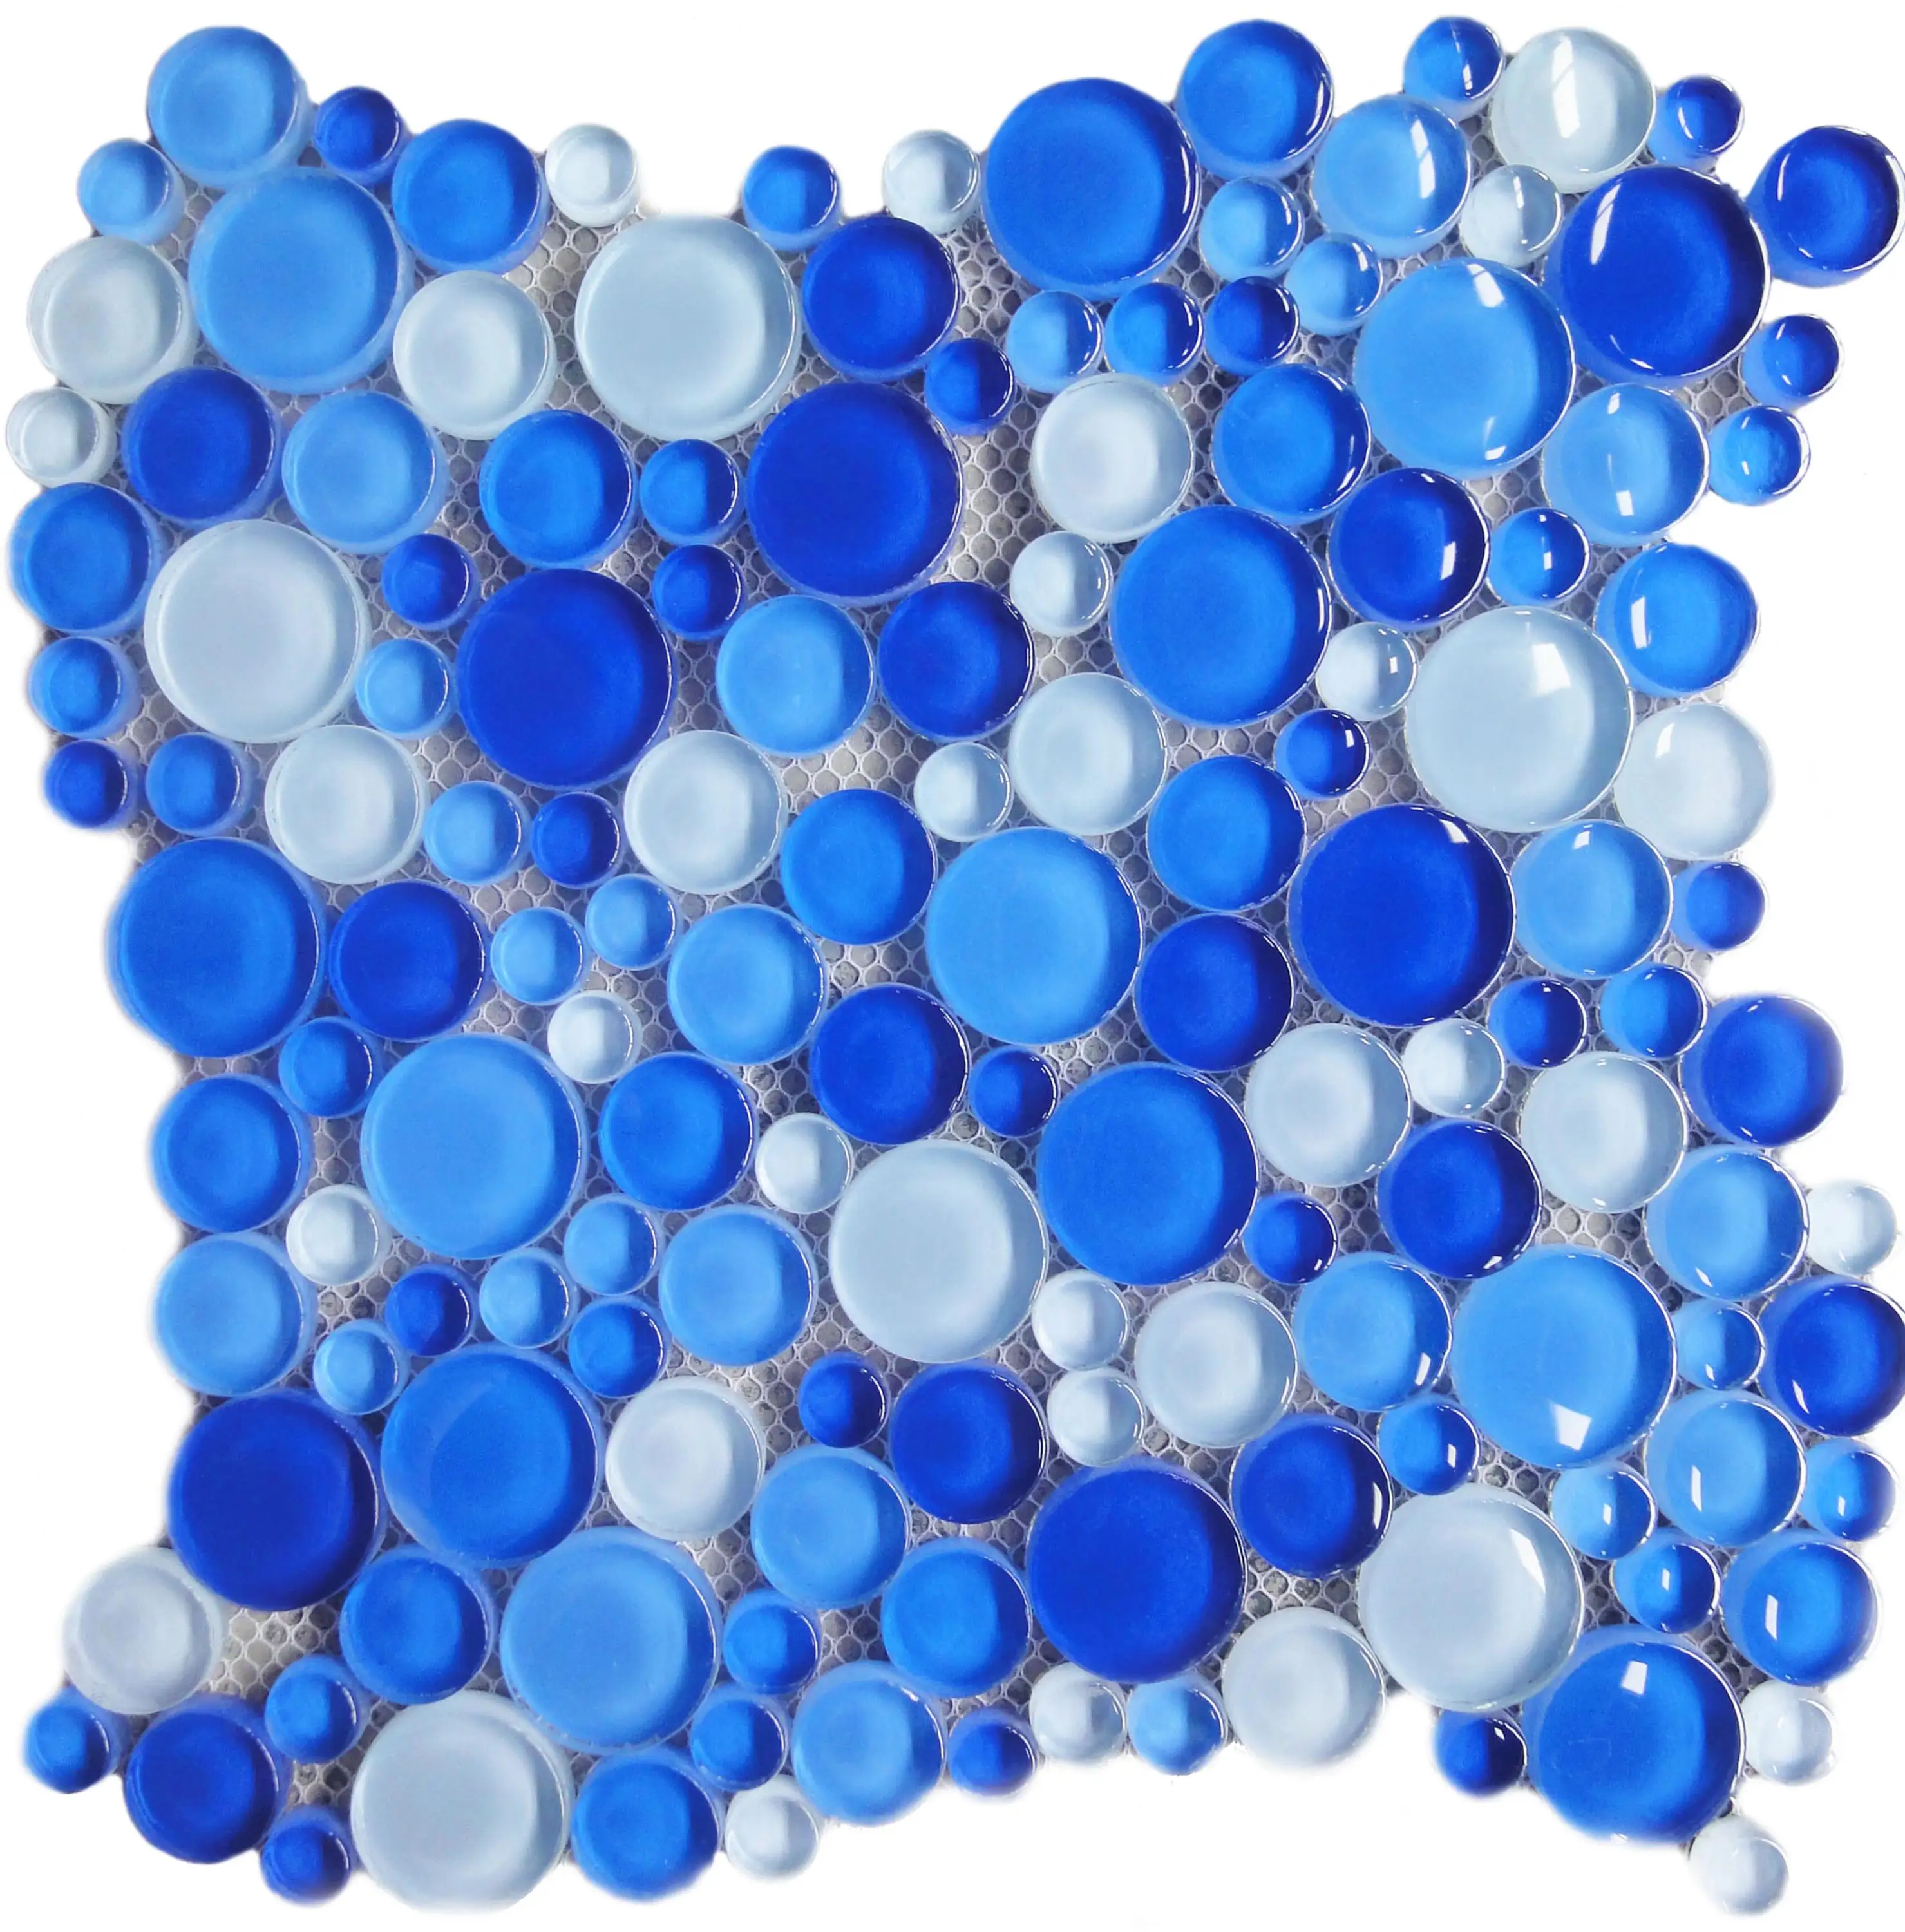 Aqua Bubble Round Blue Glass Mosaic Tile, Blue Glass Mosaic, Blue Mosaic Tiles